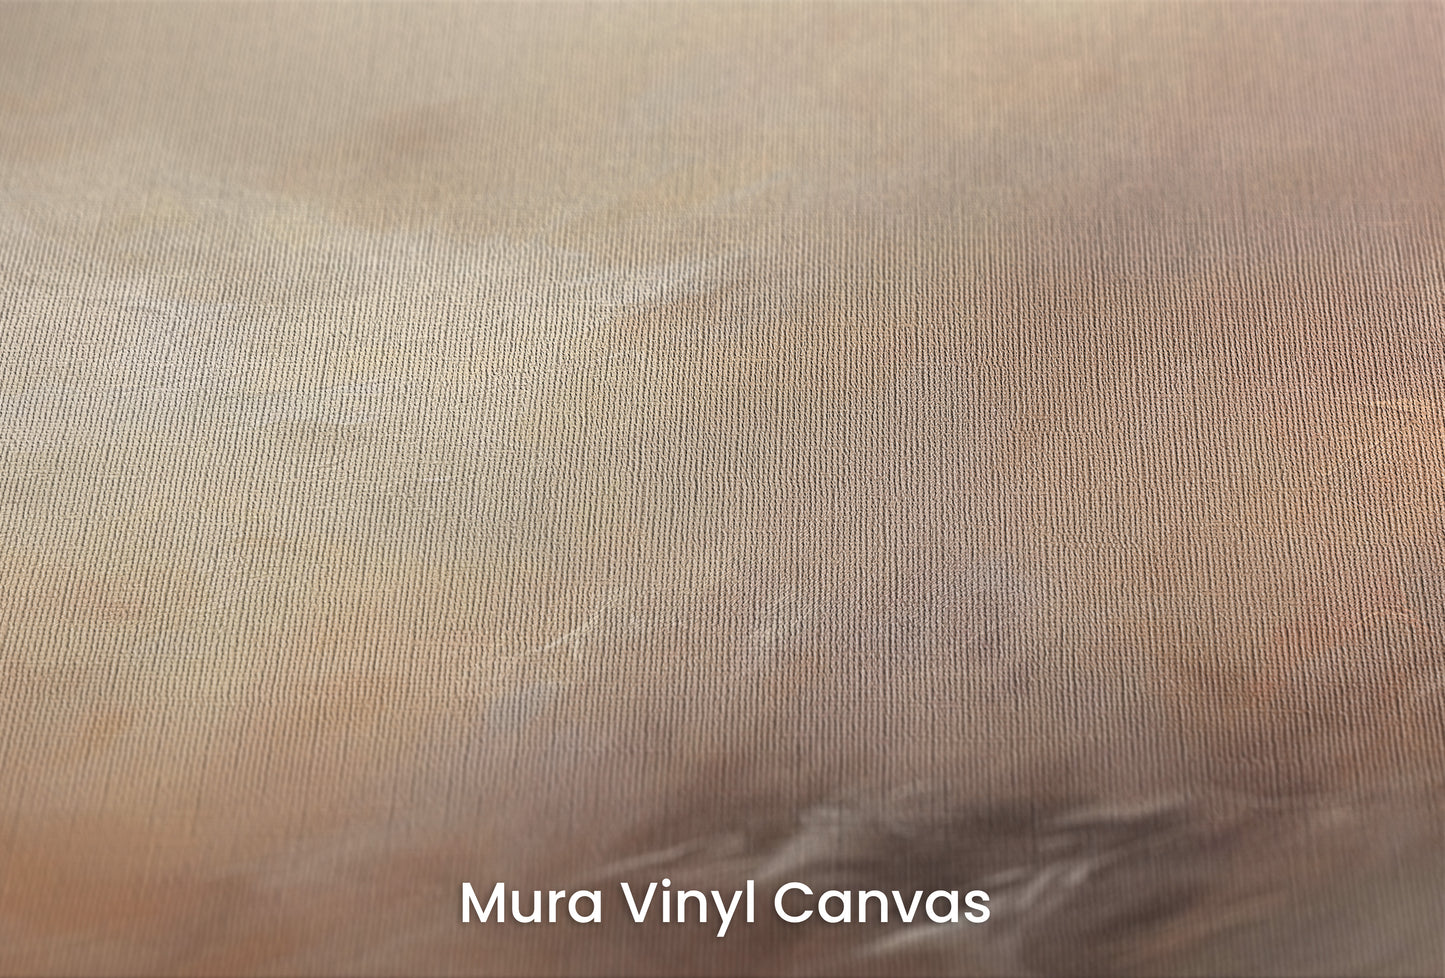 Zbliżenie na artystyczną fototapetę o nazwie WHISPERING DUSK na podłożu Mura Vinyl Canvas - faktura naturalnego płótna.